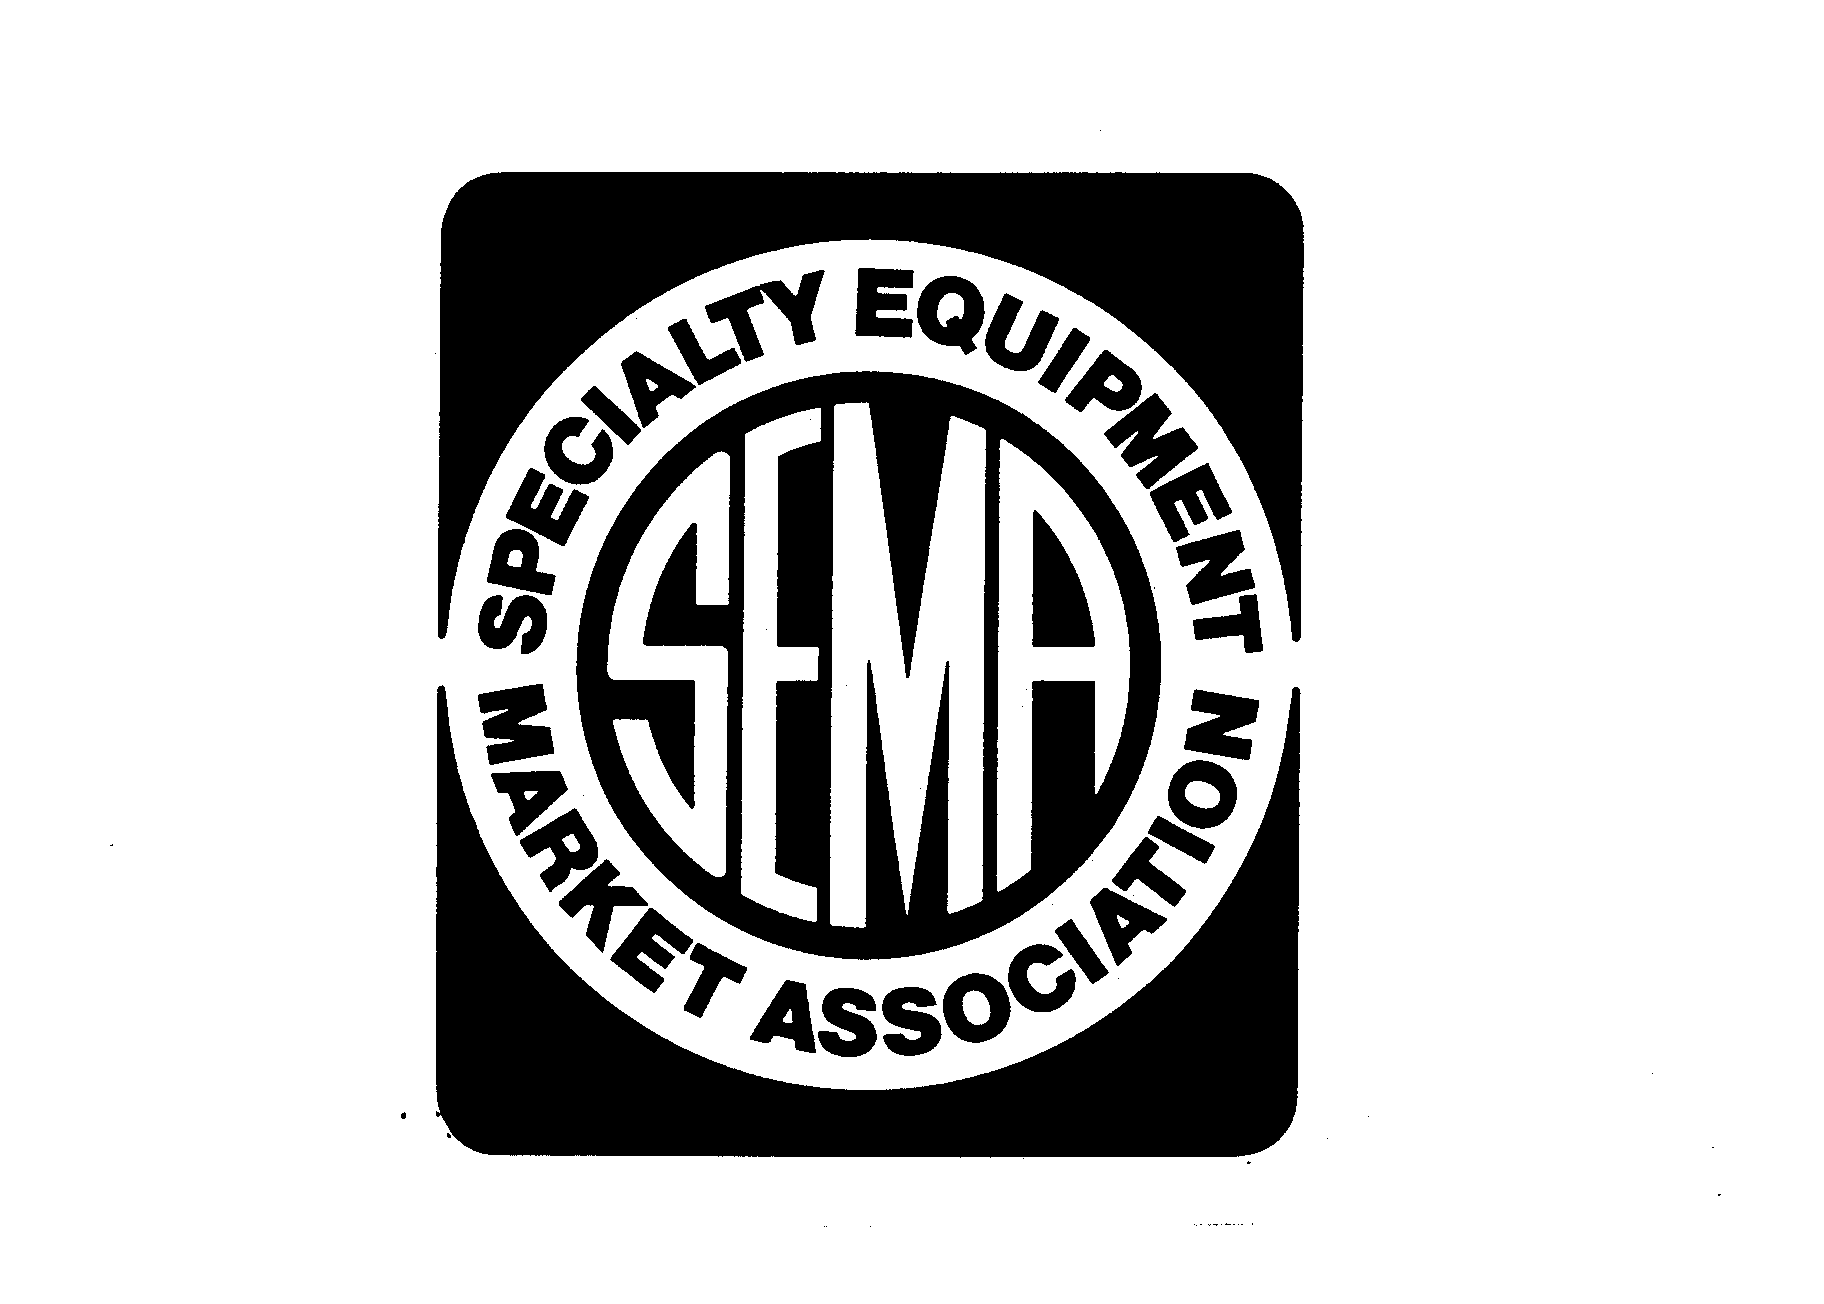  SEMA SPECIALTY EQUIPMENT MARKET ASSOCIATION